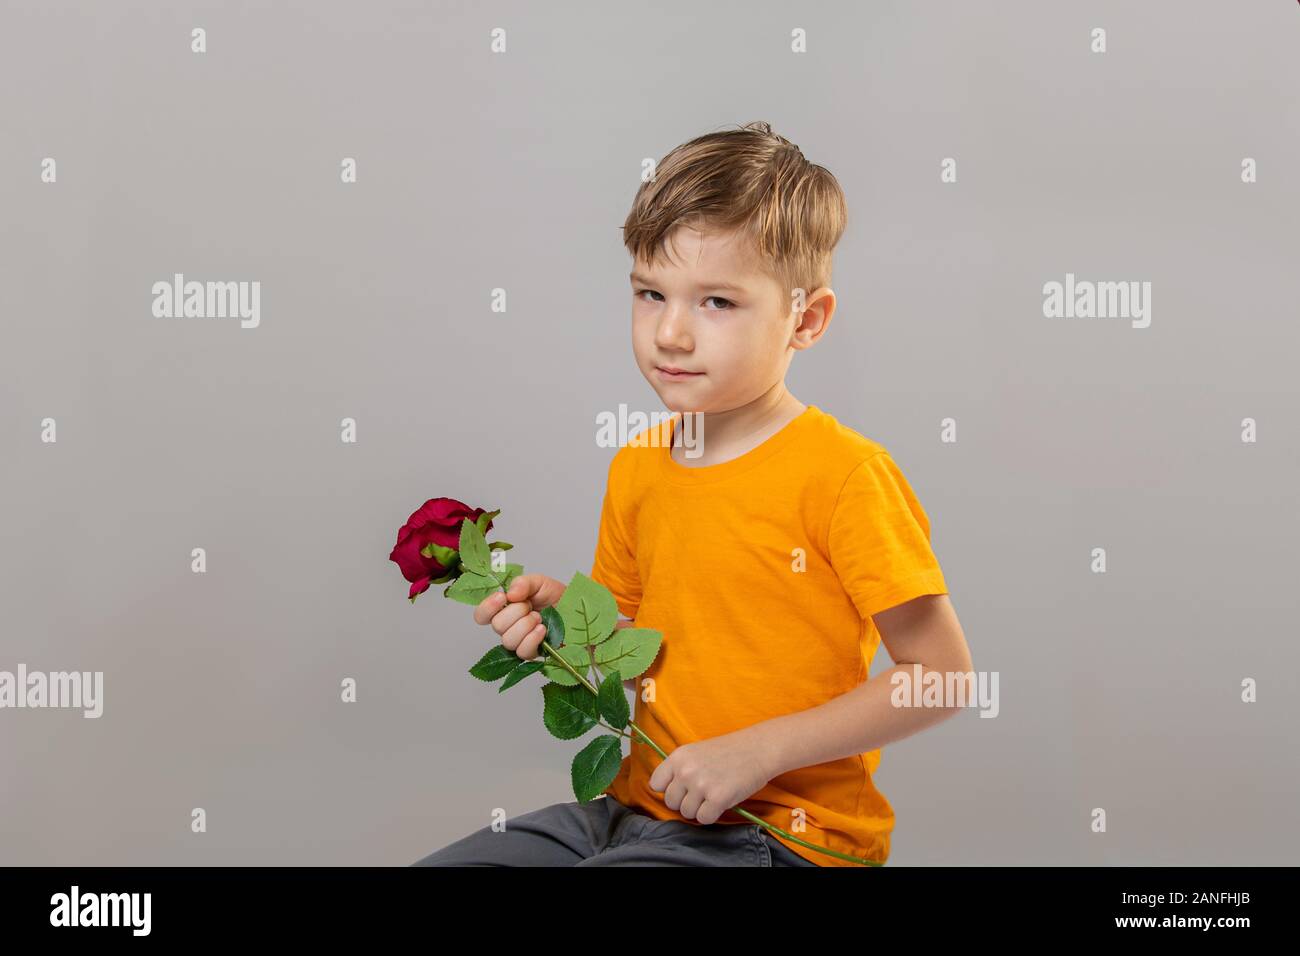 Fotografia di 5 anni del ragazzo è odore di una rosa rossa in un studio su sfondo grigio Foto Stock